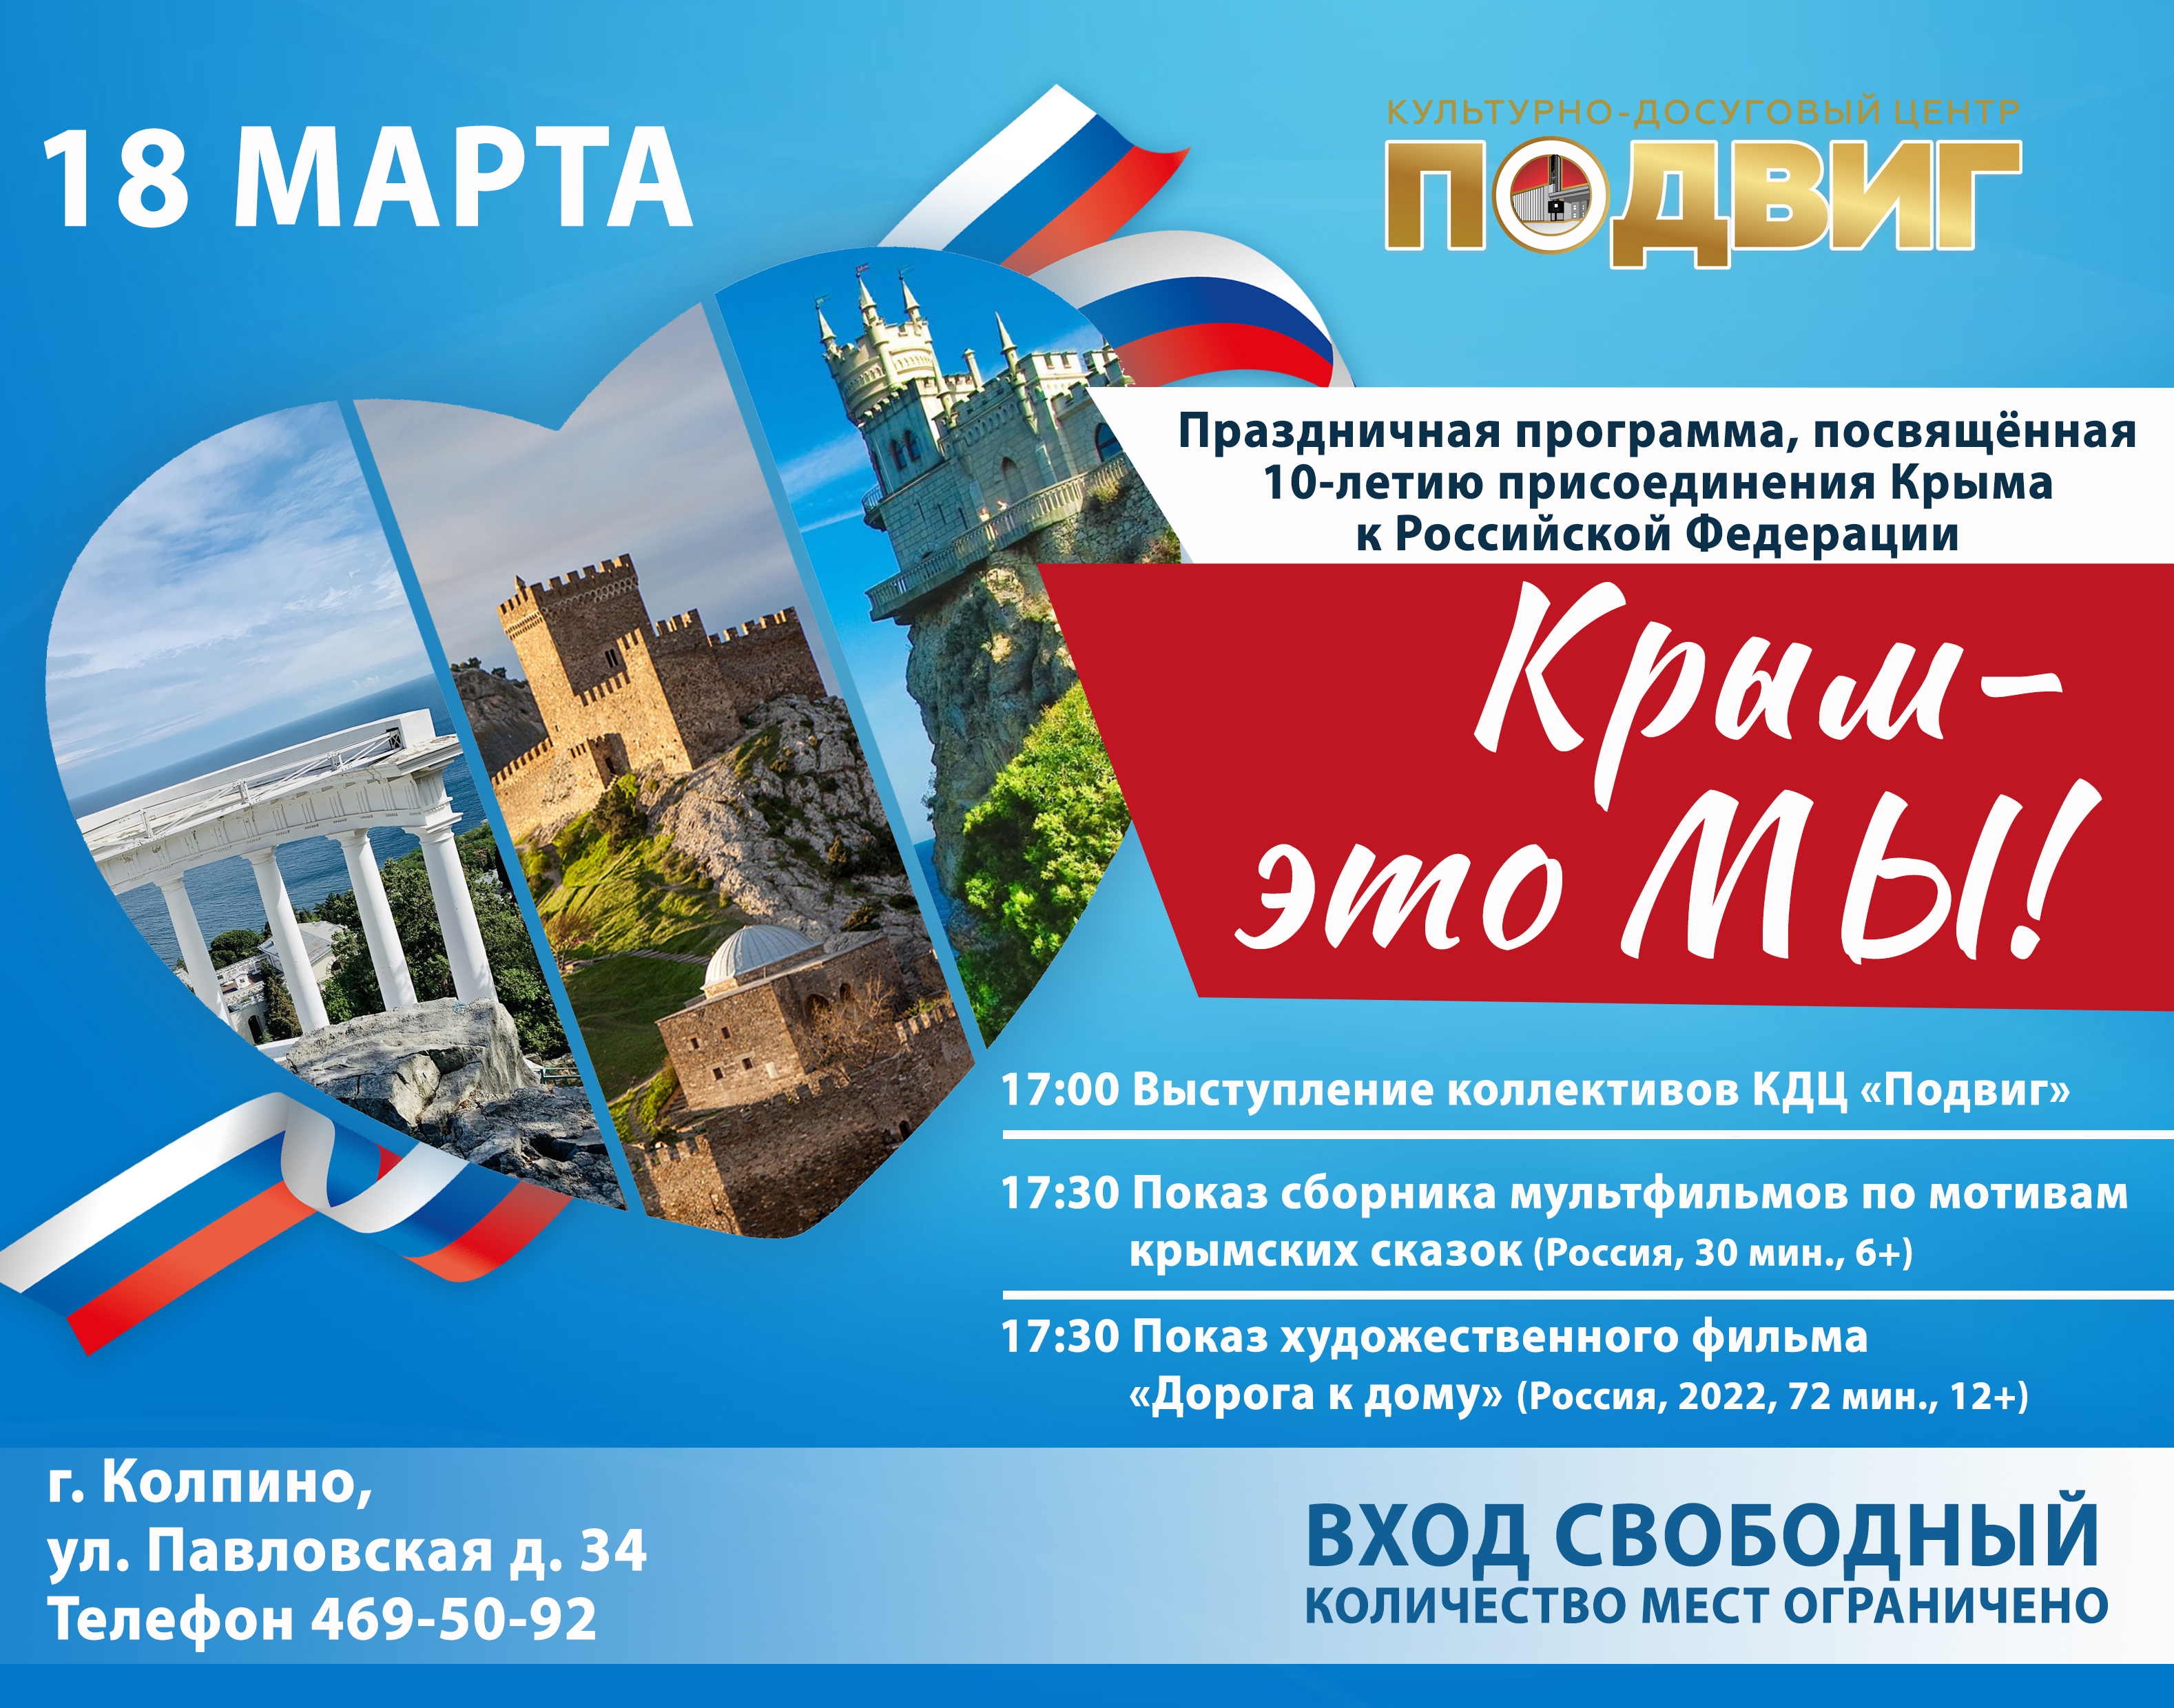 В понедельник, 18 марта, культурно-досуговый центр «Подвиг» приглашает колпинцев и гостей нашего города на мероприятие «Крым - это мы!», посвящённое десятилетию воссоединения Крыма с Россией!